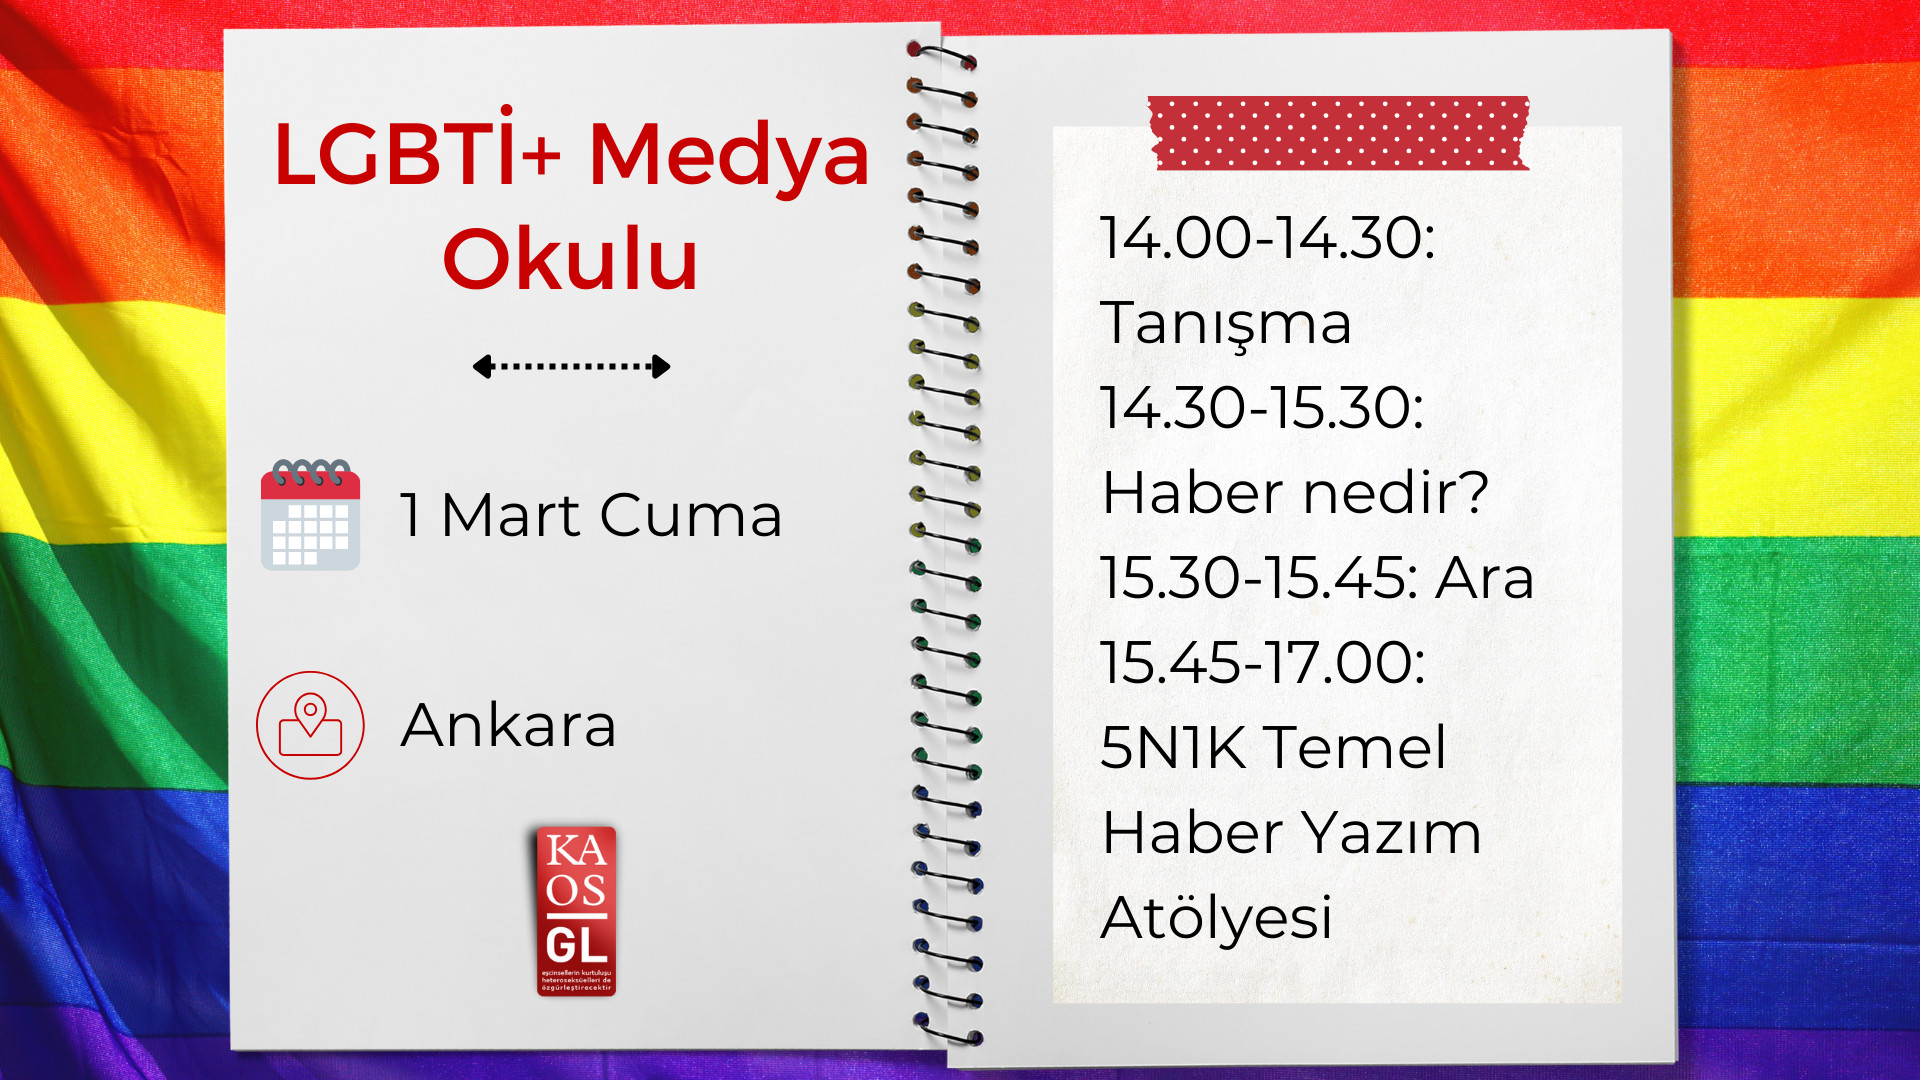 Medya Okulu, Ankara’da kapılarını açıyor | Kaos GL - LGBTİ+ Haber Portalı Haber